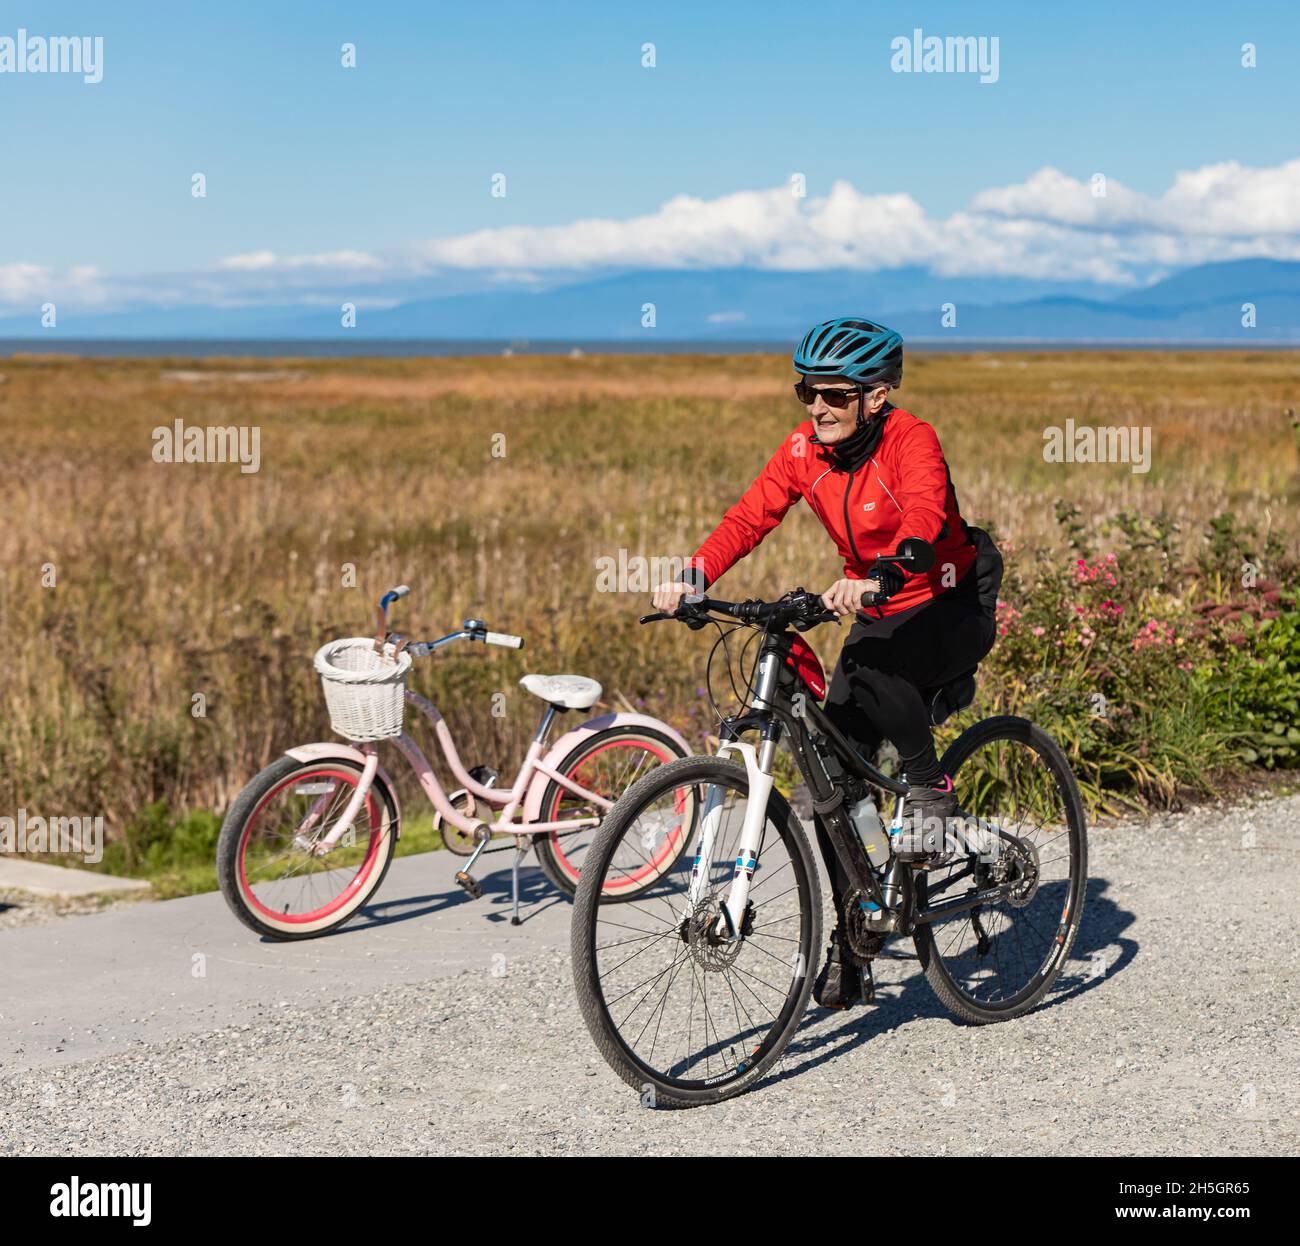 Lächelnd fit ältere Frau auf einem Fahrrad in einem Park. Glückliche ältere Frau mit Helm auf dem Sportfahrrad. Straßenbild, Reisefoto, aktives Altern Stockfoto